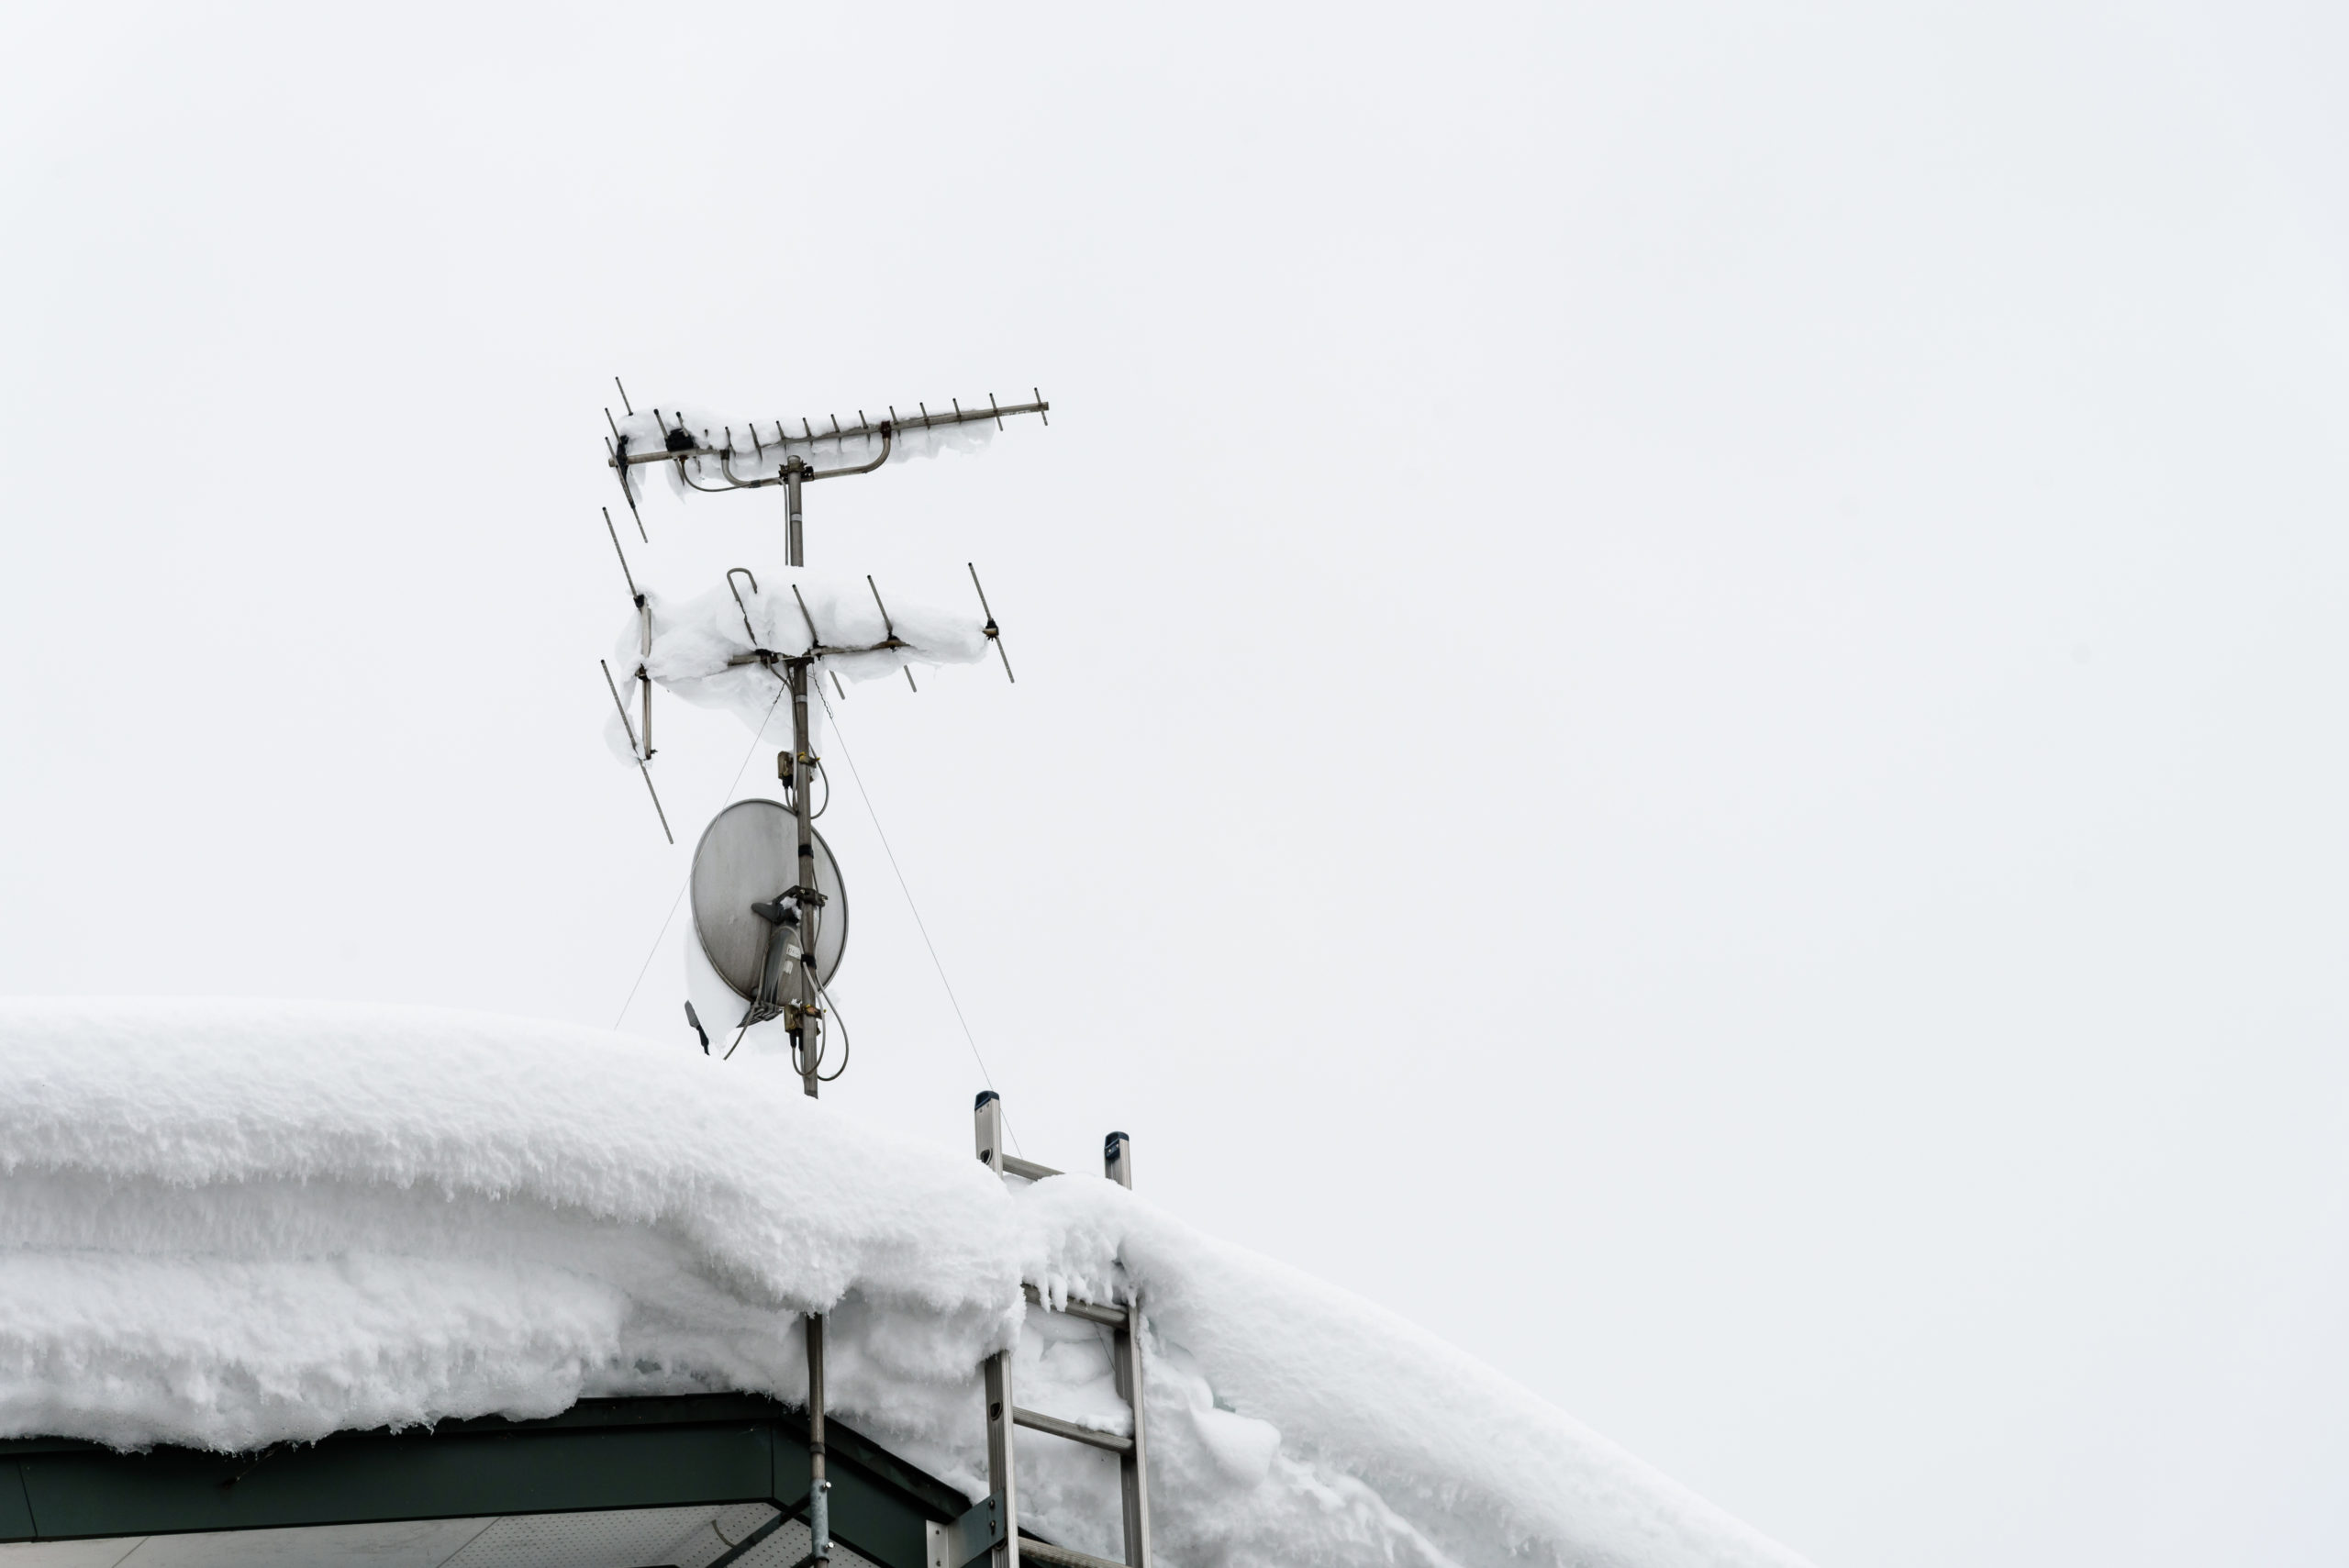 テレビアンテナ工事と雪の関係性と雪害についてご紹介